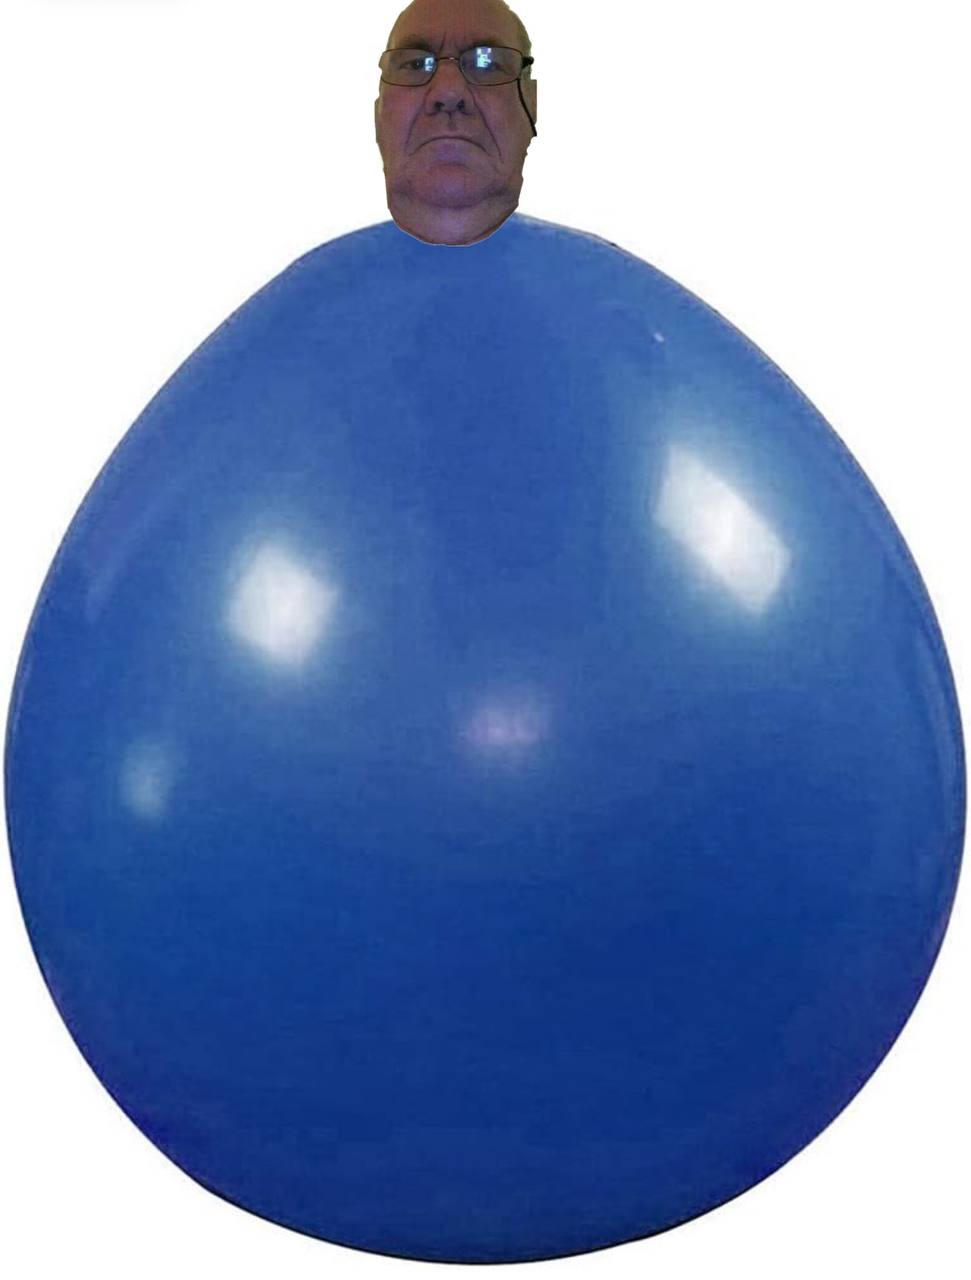 test balloon